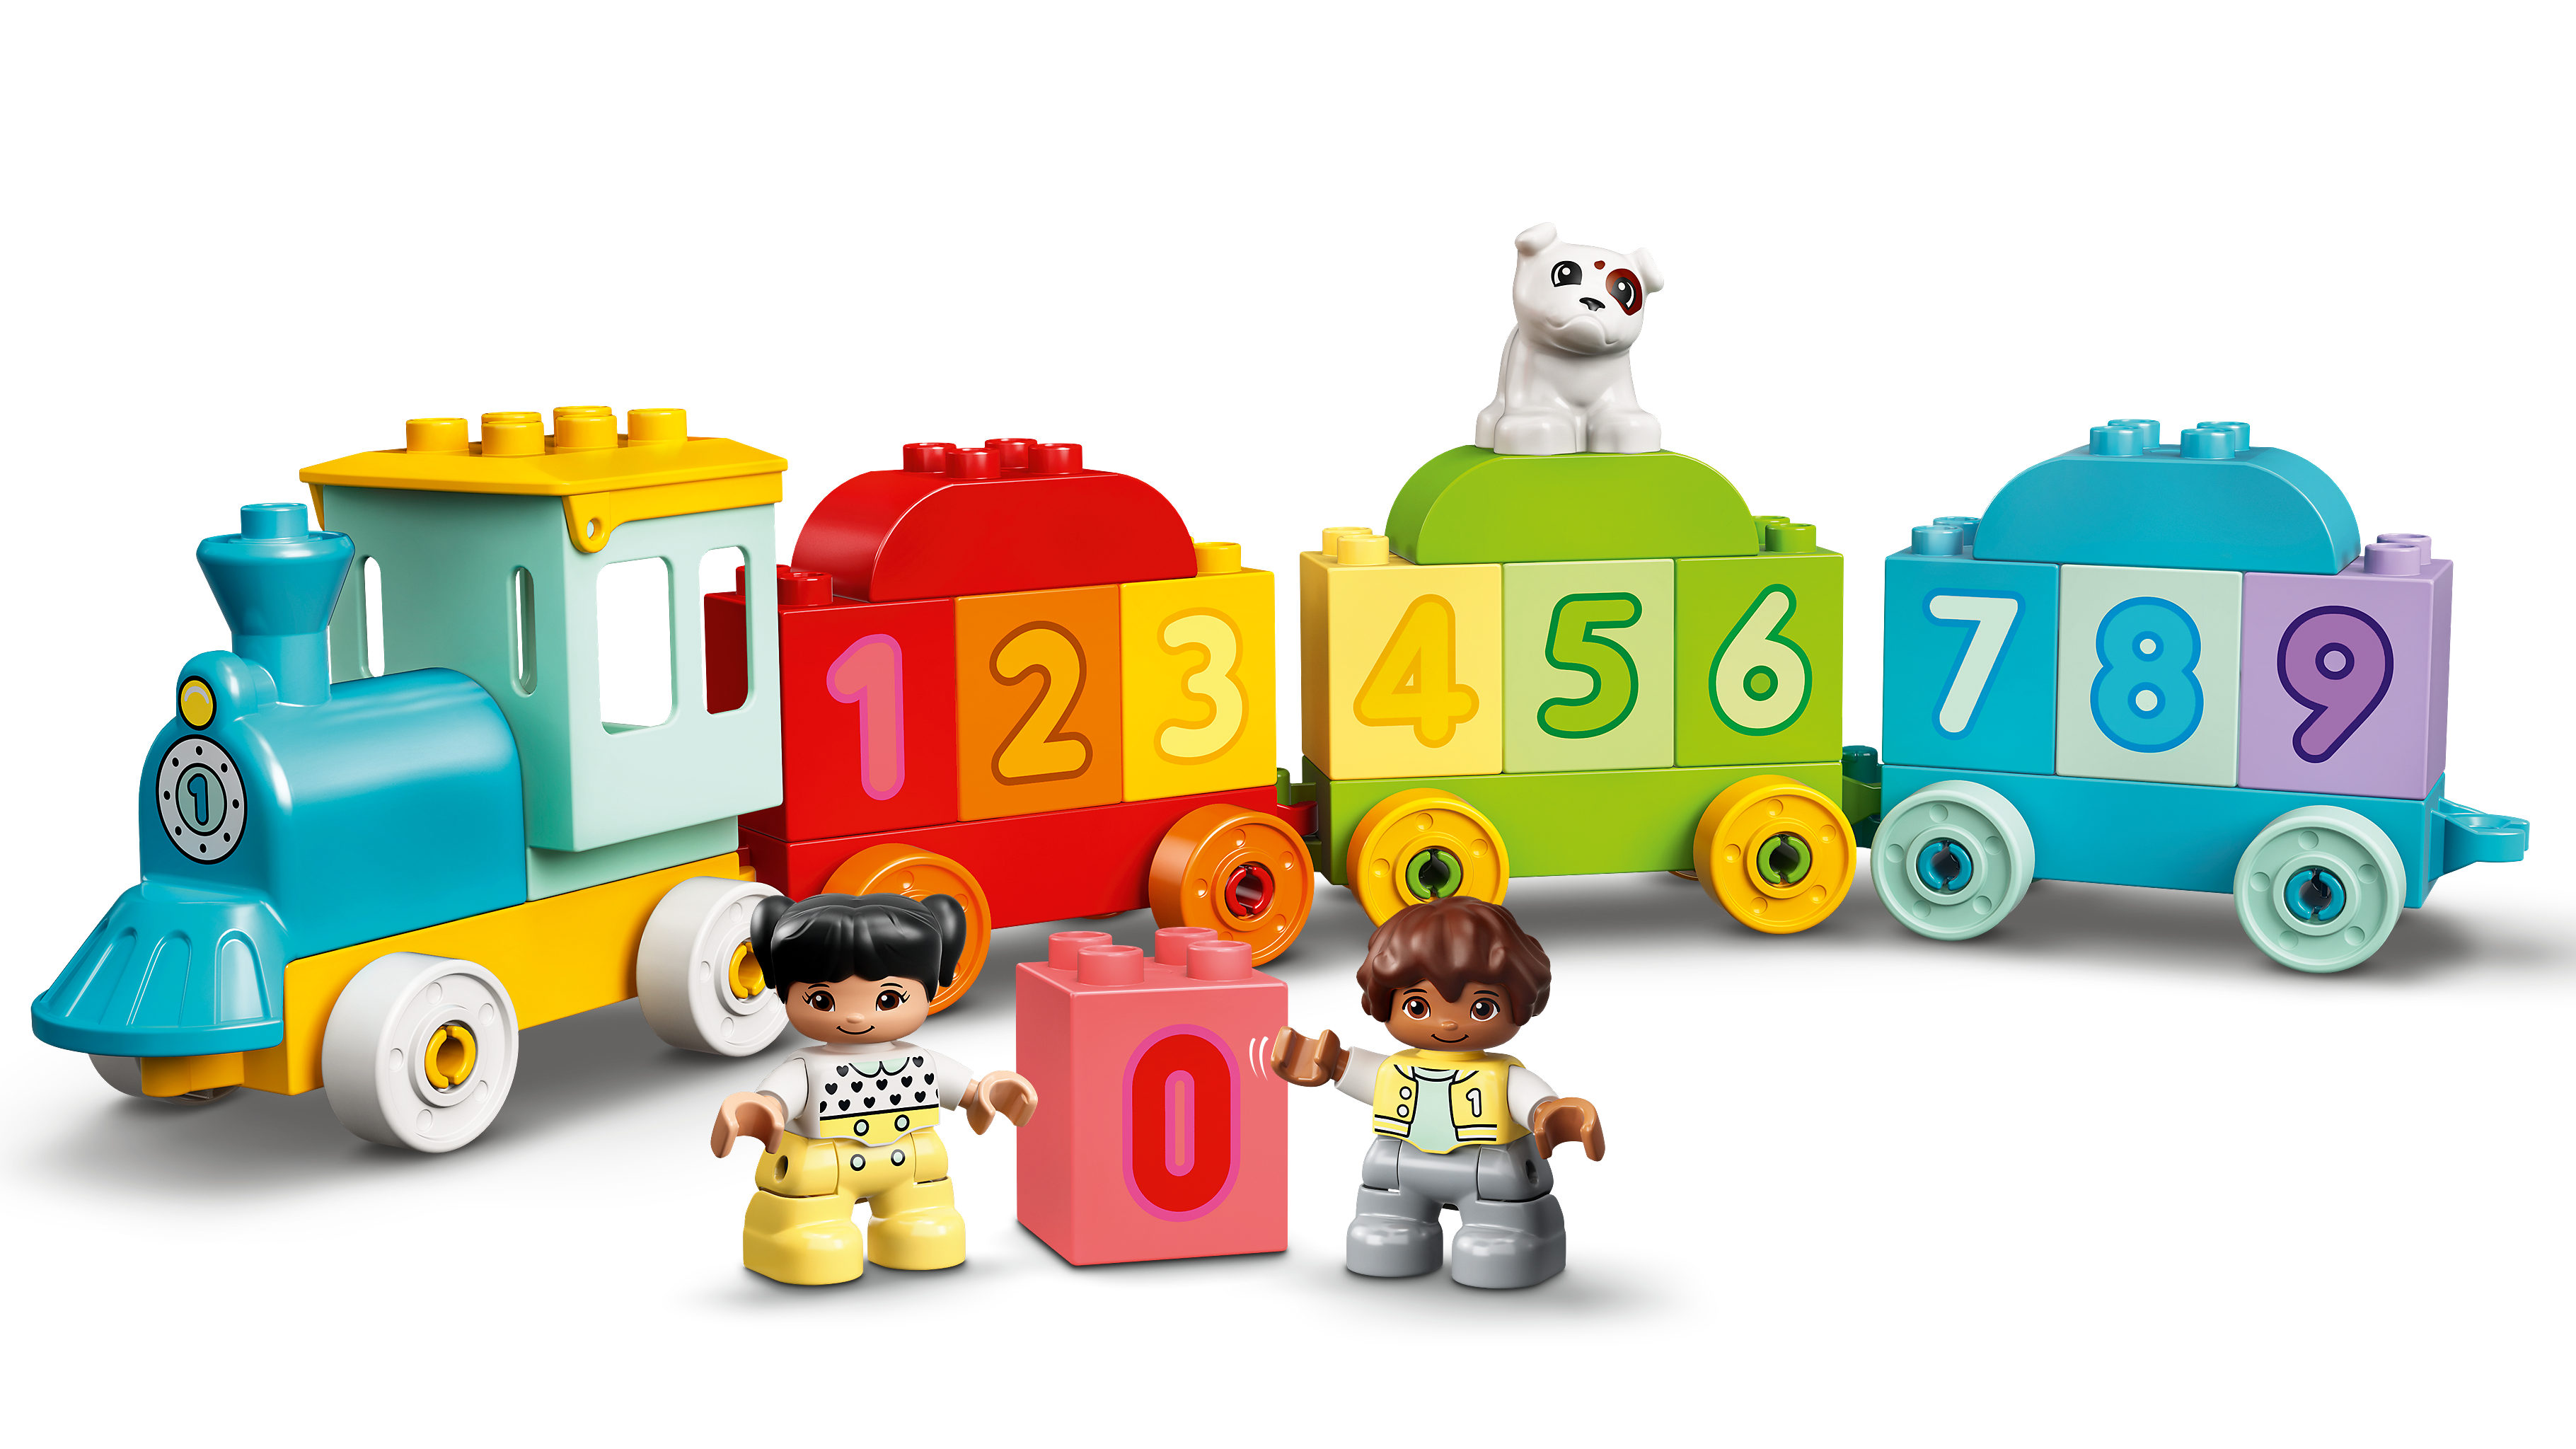 Juguete Educativo de Construcción Tren de los Números: Aprende a Contar  LEGO DUPLO